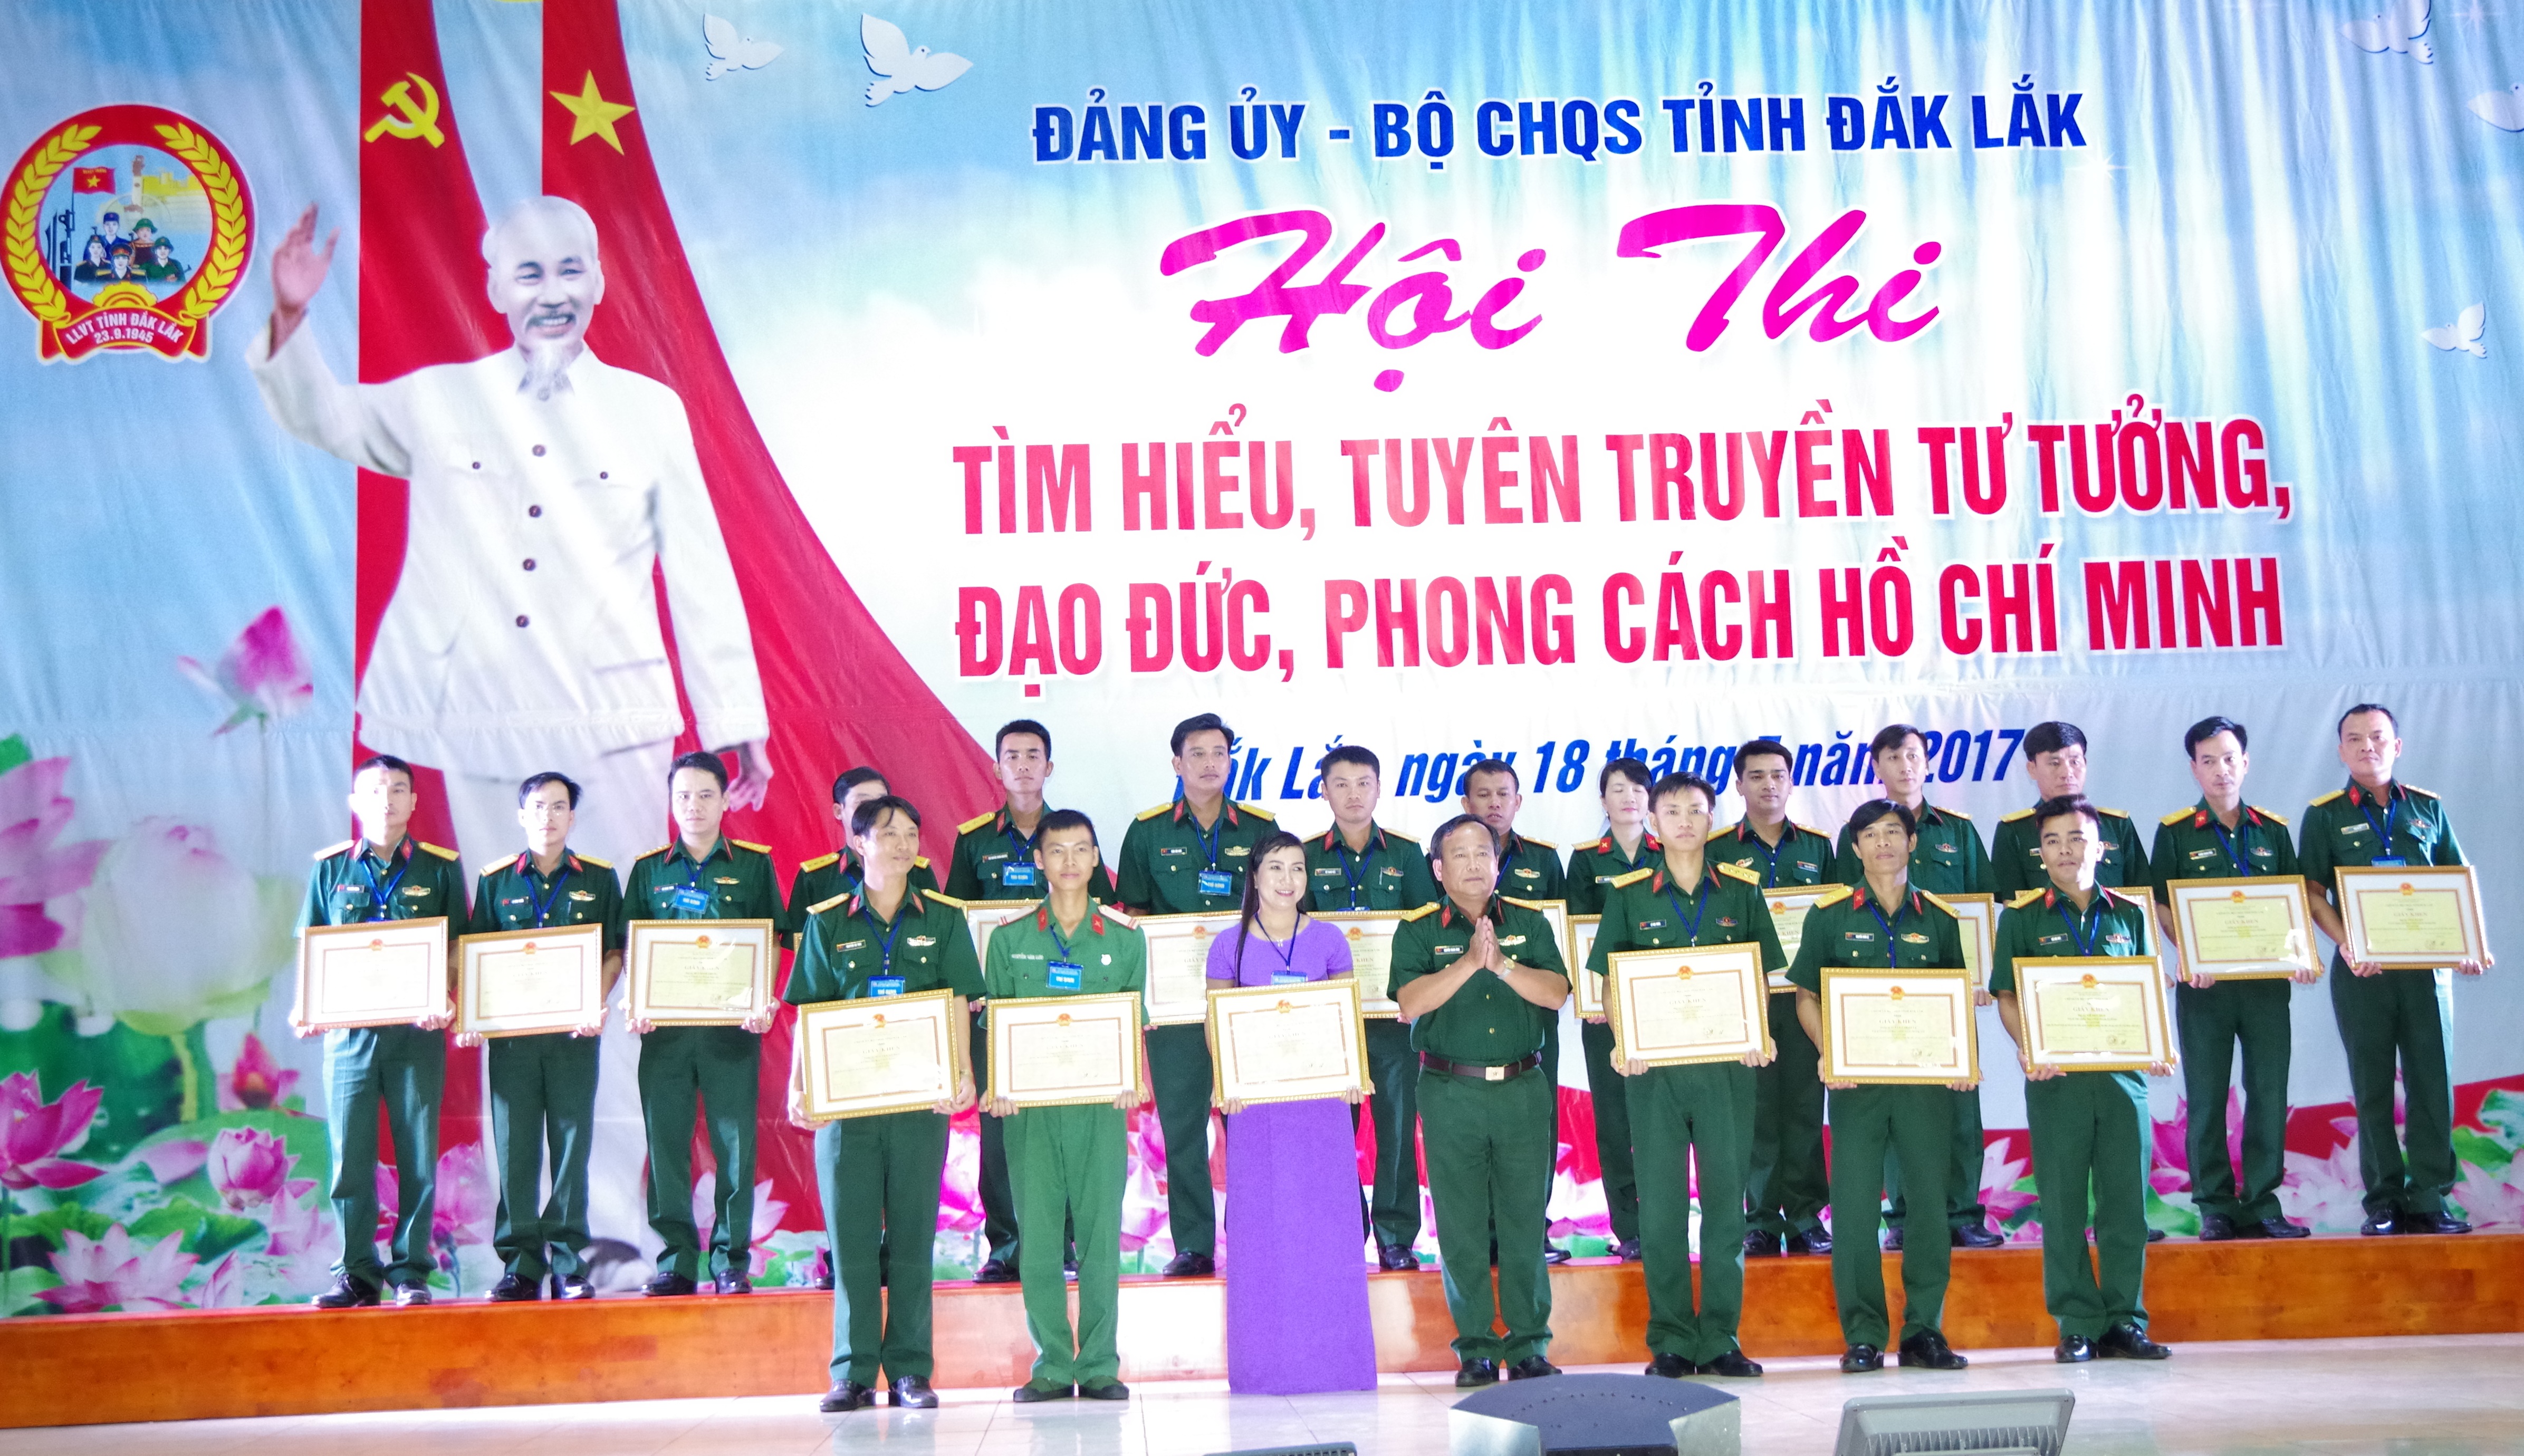  Trung sĩ Nguyễn Văn Lưu (đứng thứ 2 từ trái sang, hàng thứ nhất) nhận giấy khen của hội thi